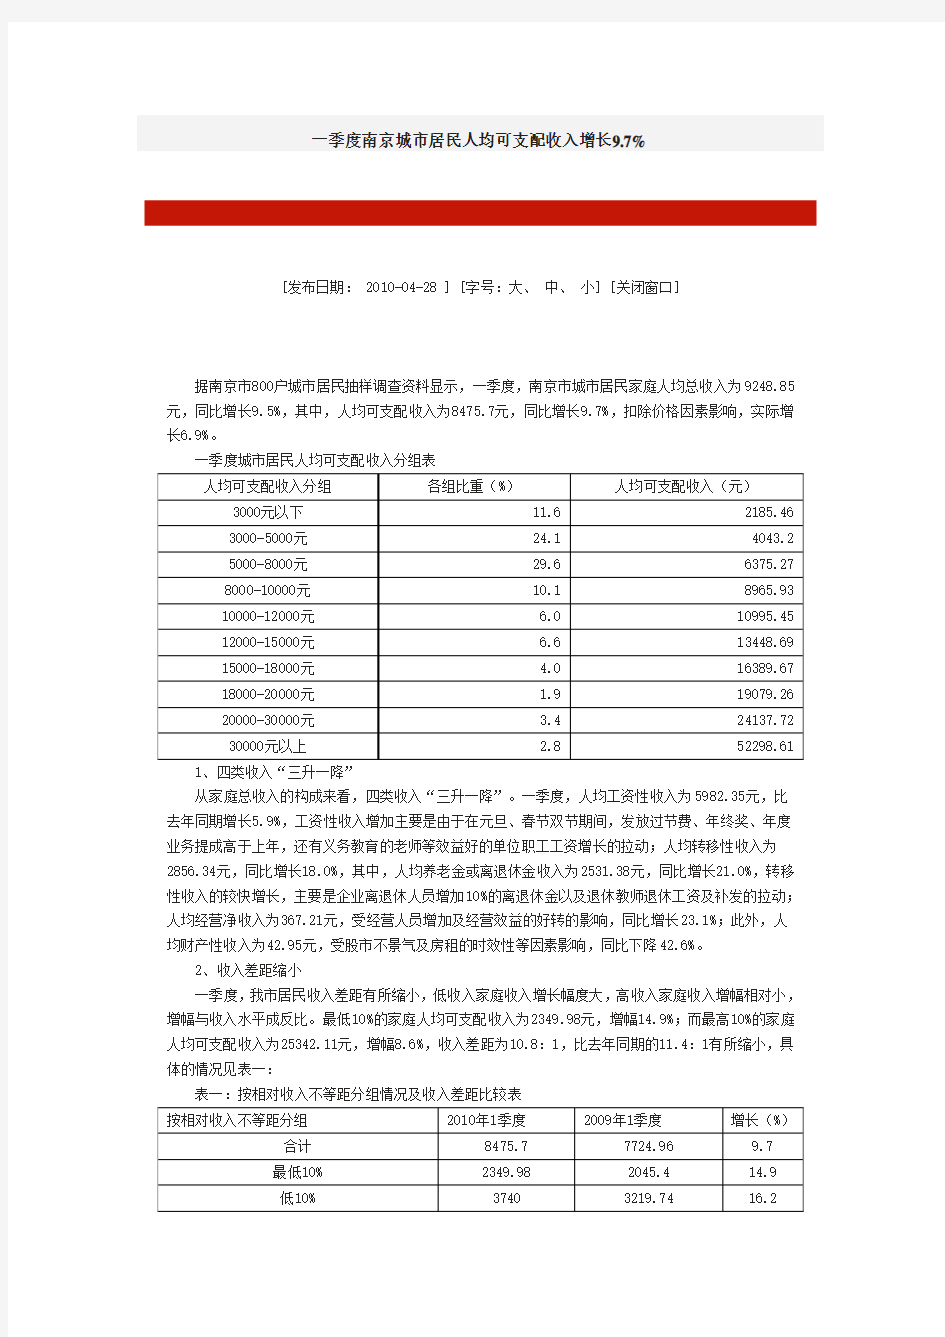 南京城市居民人均可支配收入